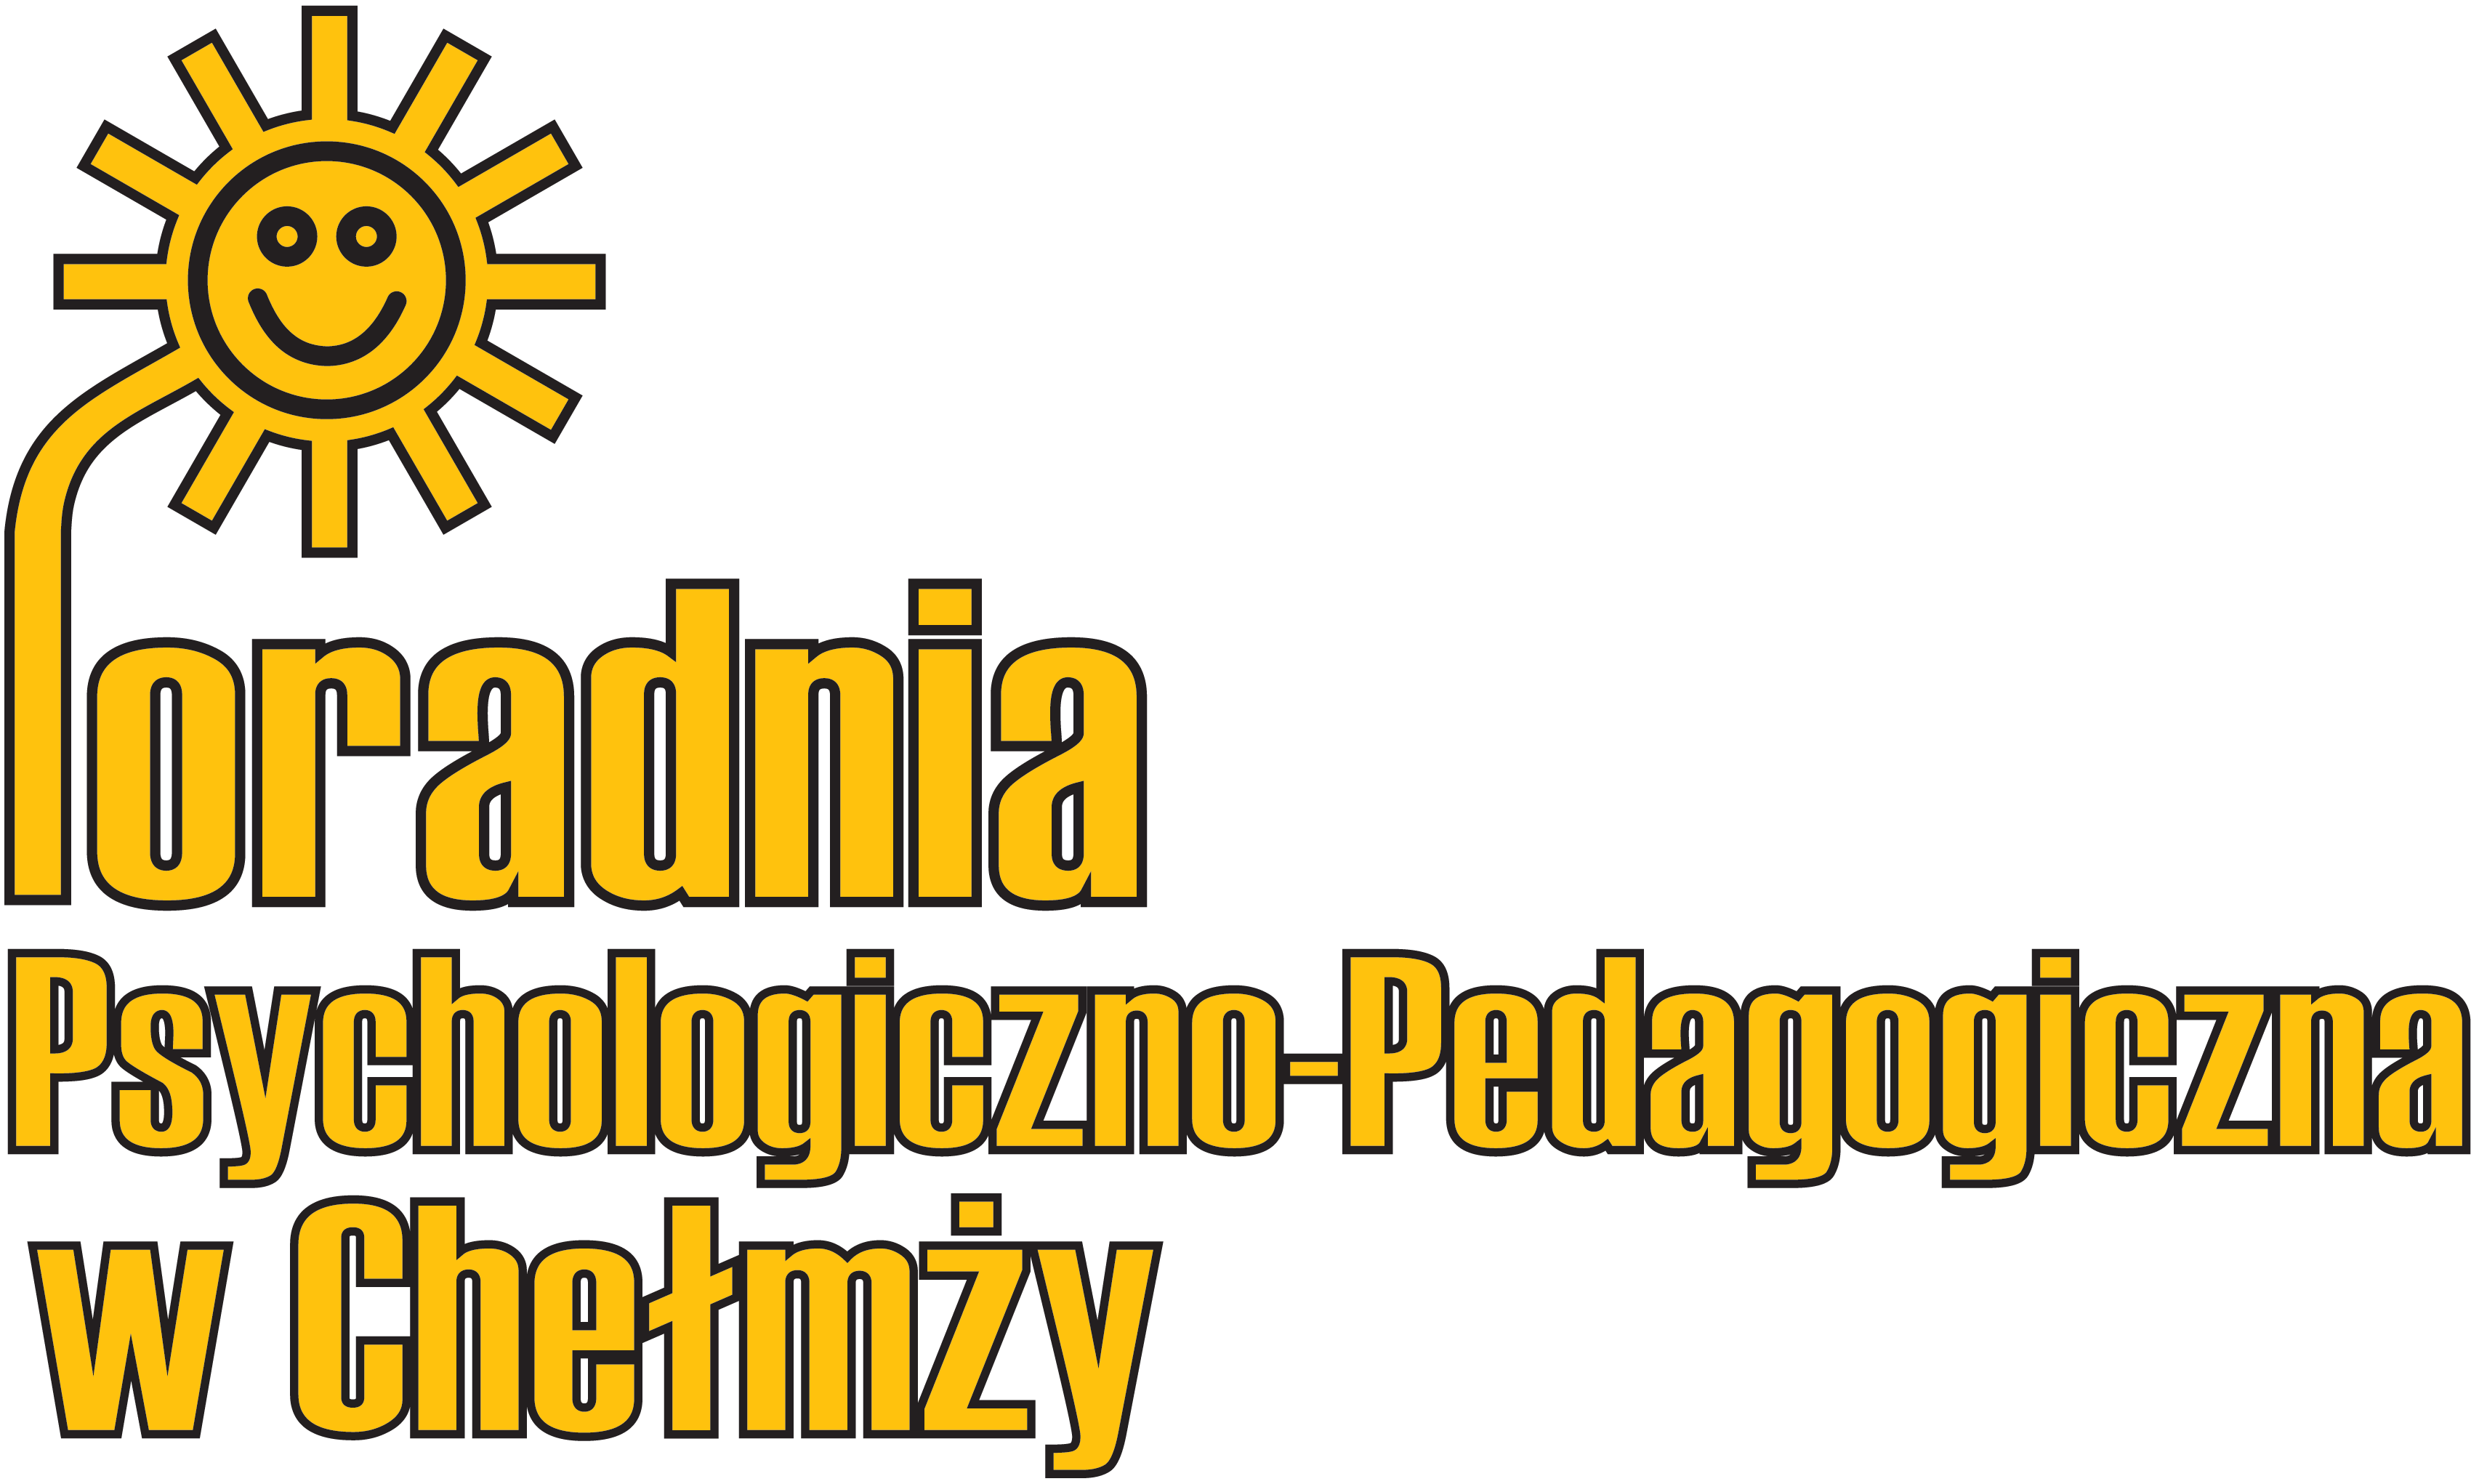 Poradnia Psychologiczno-Pedagogiczna w Chełmży